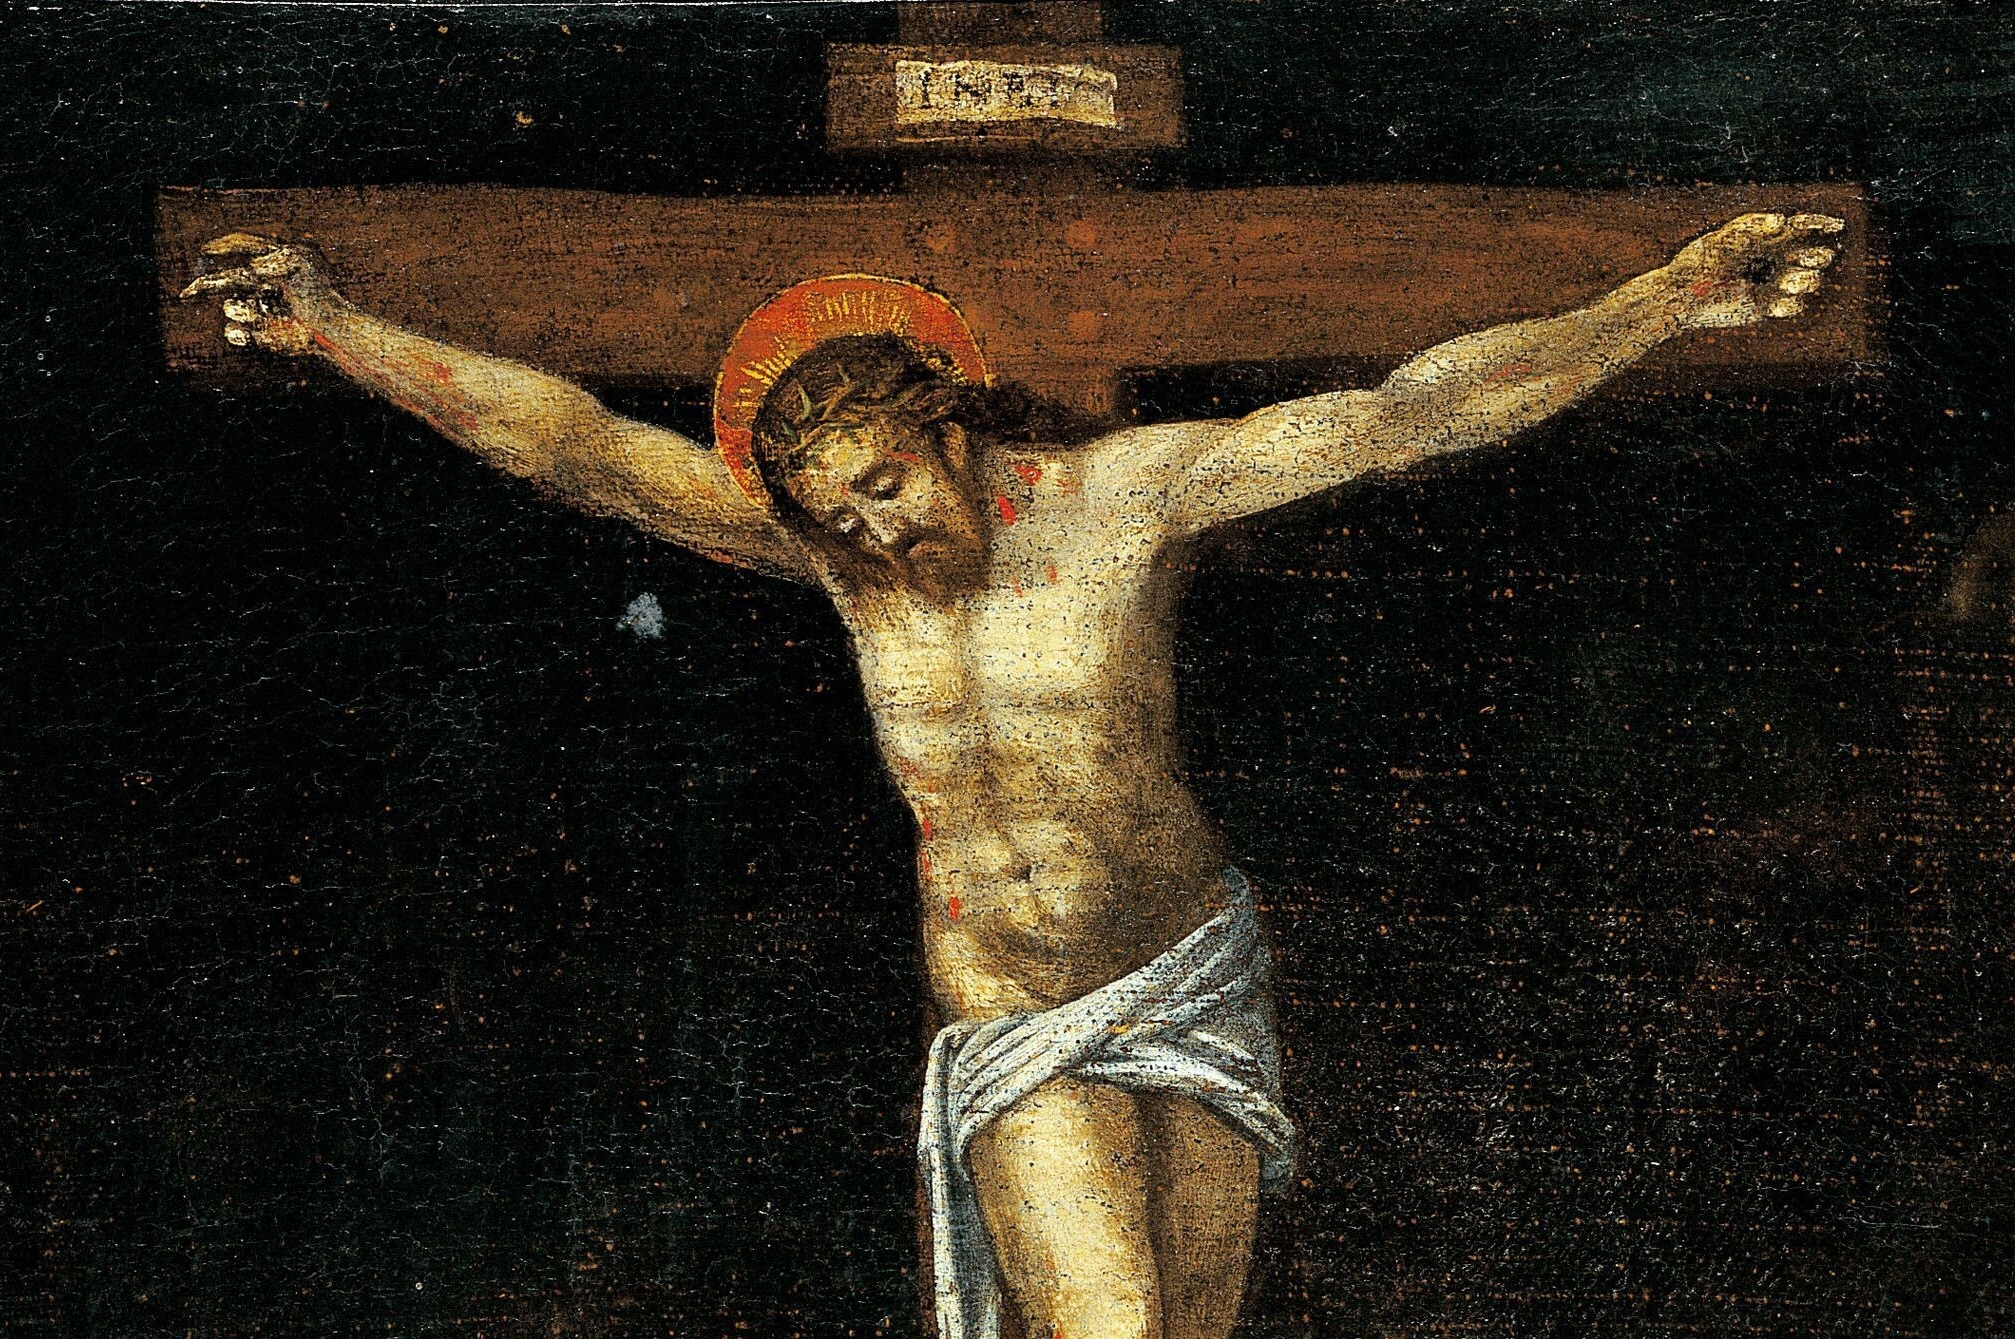 Jak cierpiał i umierał Jezus na krzyżu. To było nieludzkie cierpienie